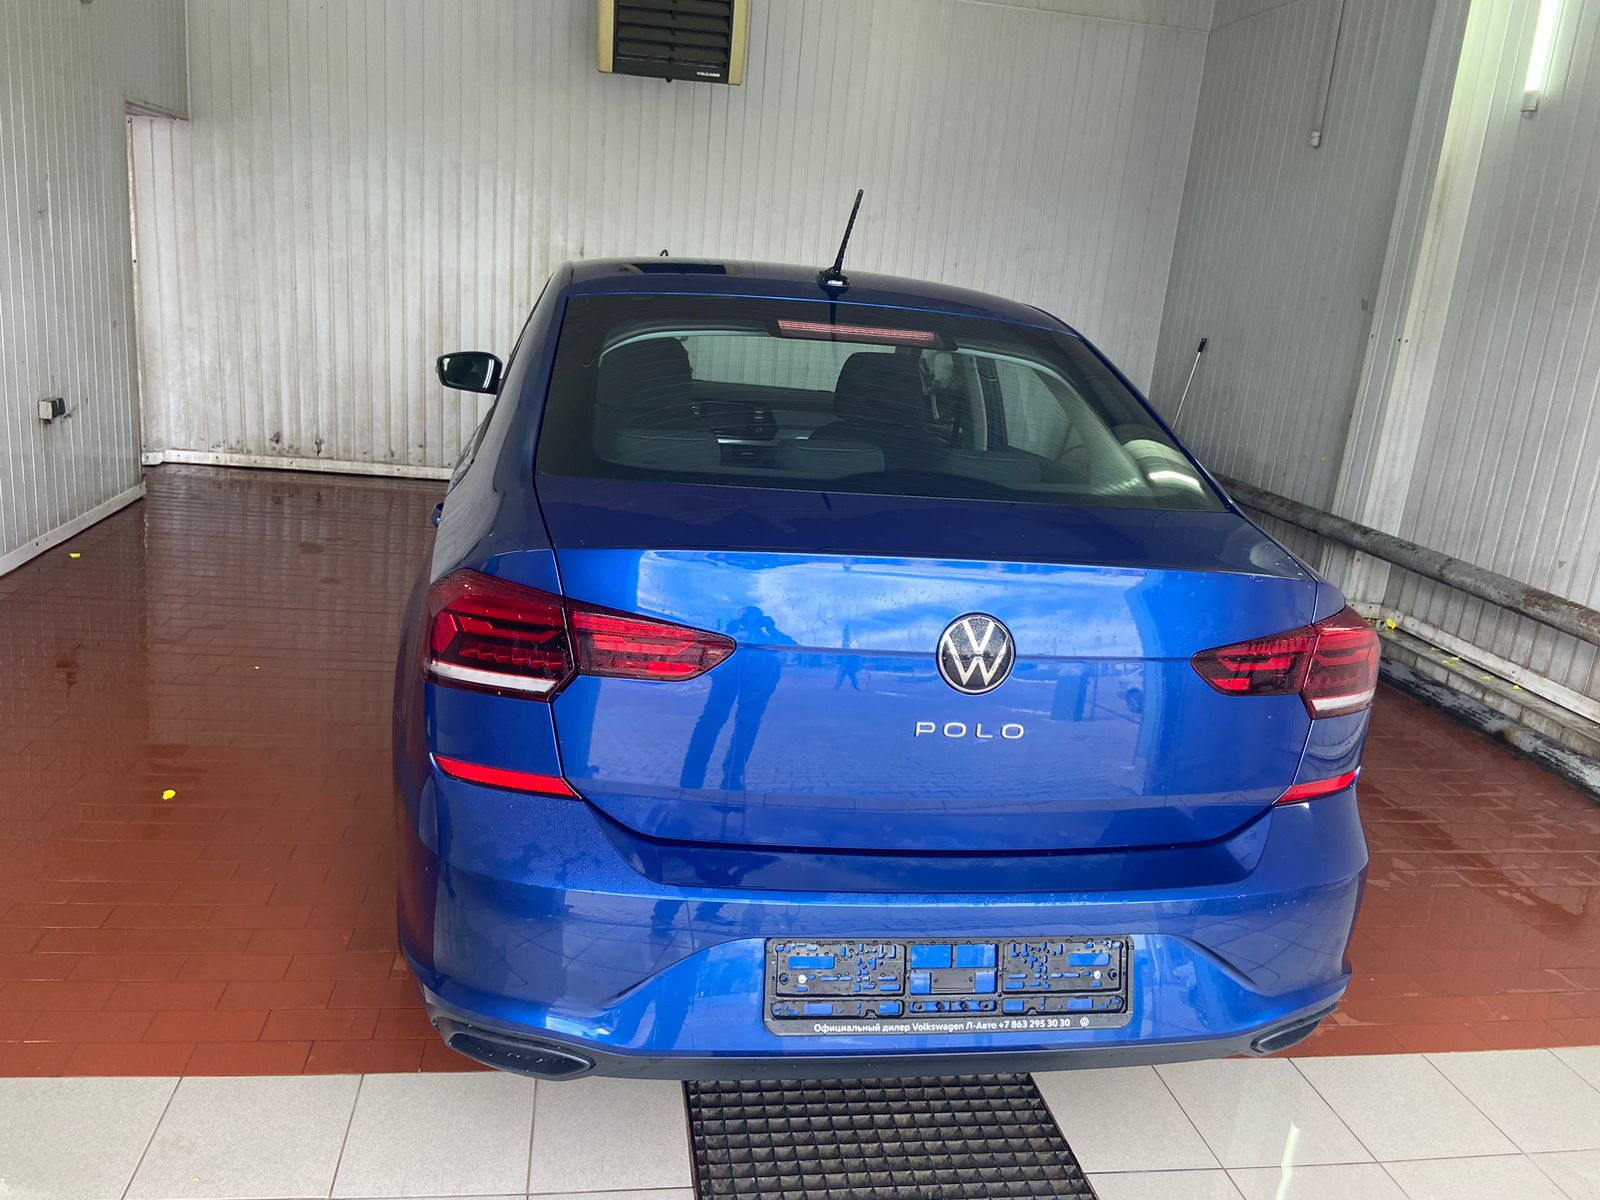 (Под заказ) Volkswagen Polo 1.6 (110л.с.) 6-АКП. Status +Пакет «Зимний». Синий »Reef», металлик, 2022